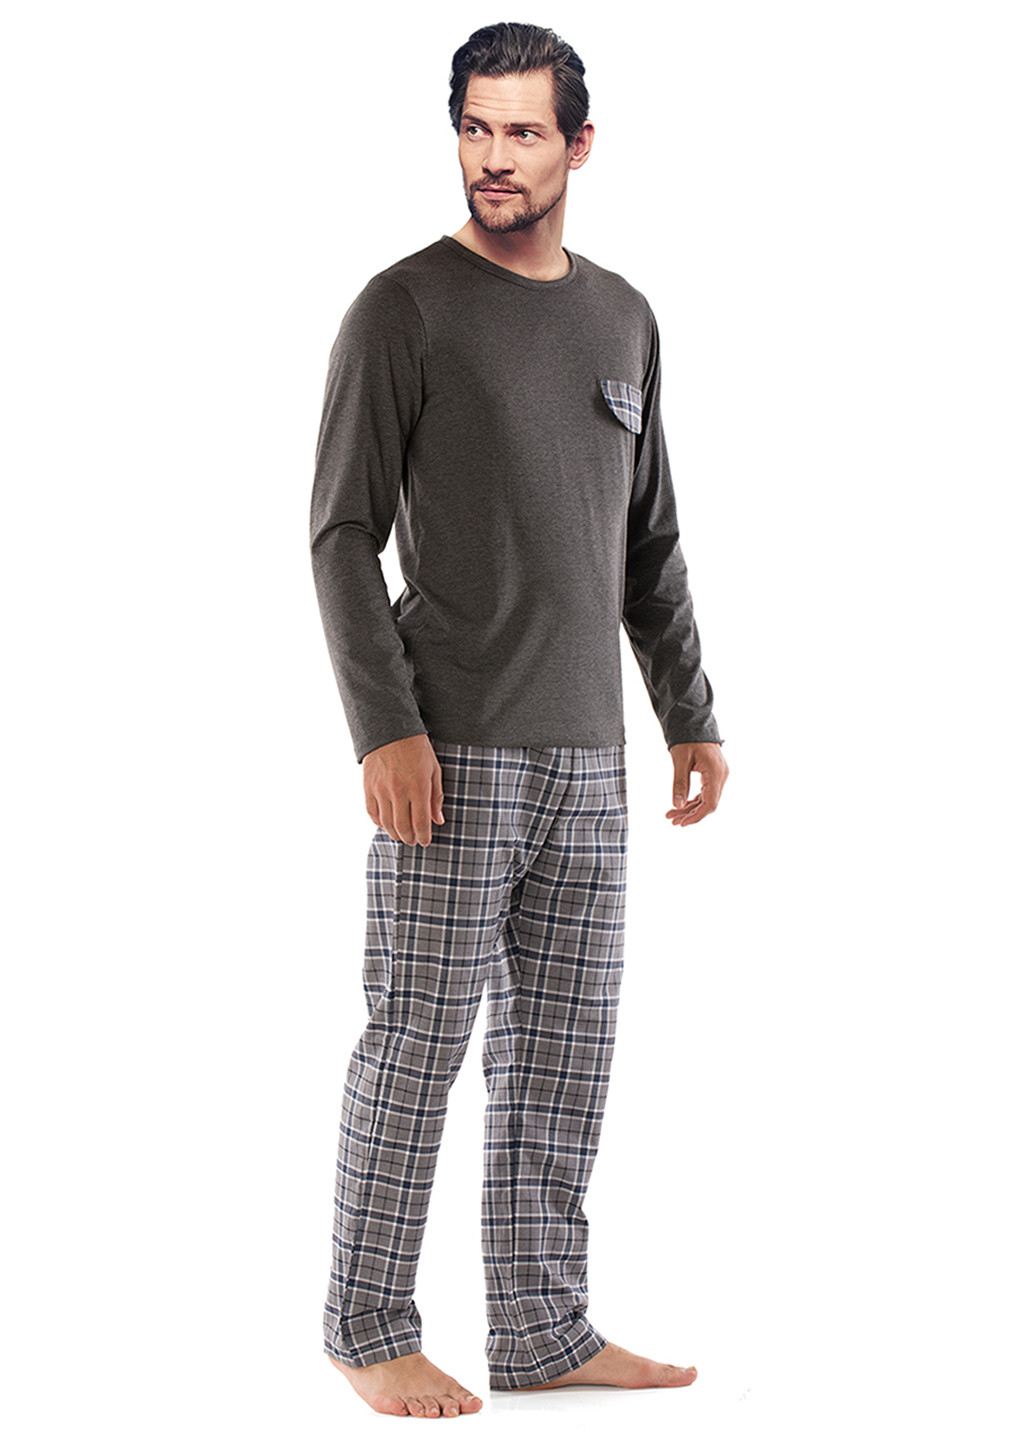 Пижама (лонгслив, брюки) DoReMi лонгслив + брюки клетка графитовая домашняя полиэстер, хлопок